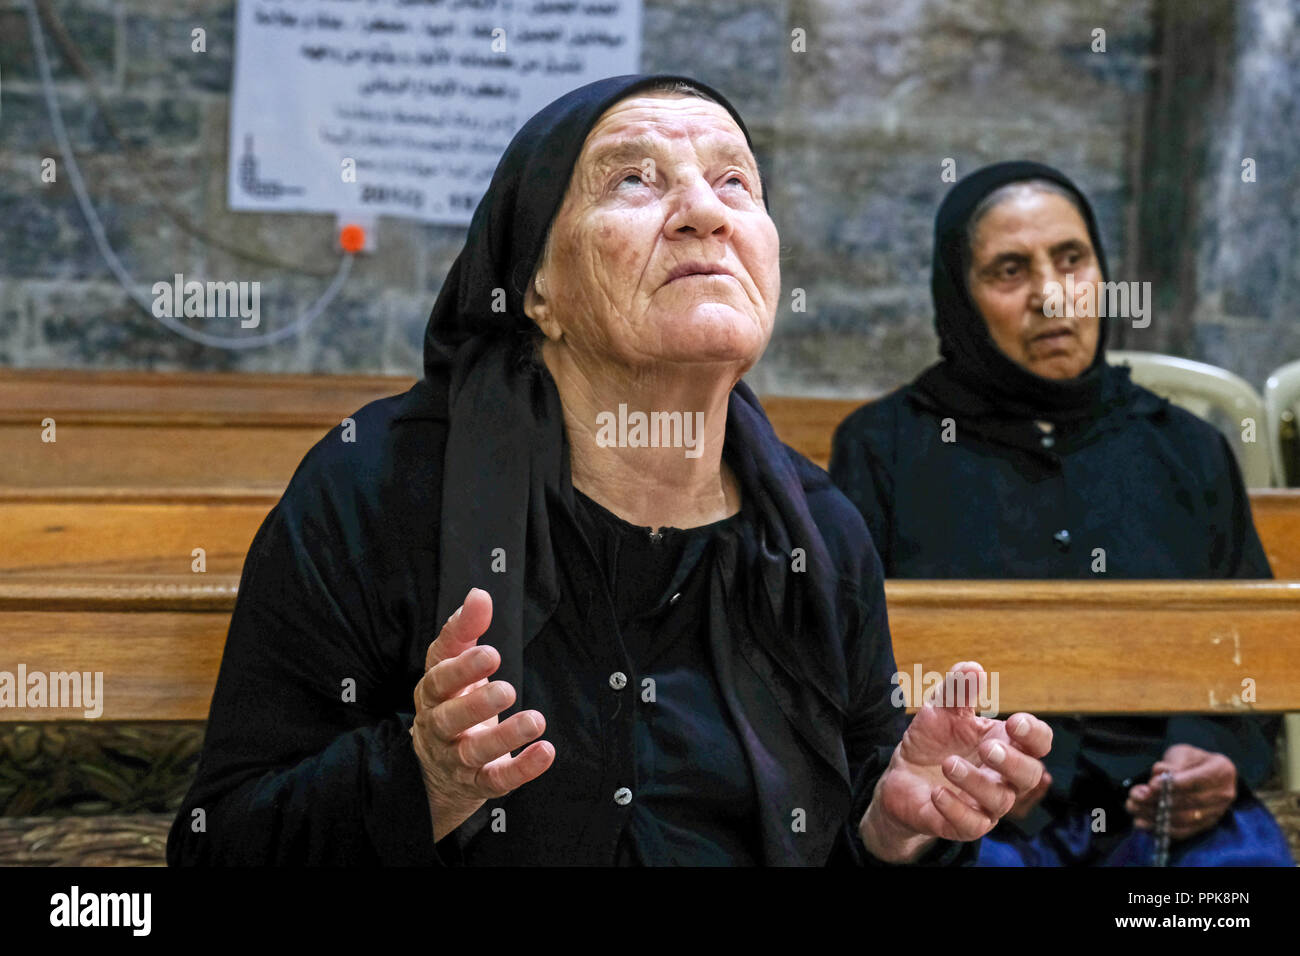 Christliche Frau mit Kopftuch beten in einer Kirche in der kurdischen  Region, Nord Irak Stockfotografie - Alamy